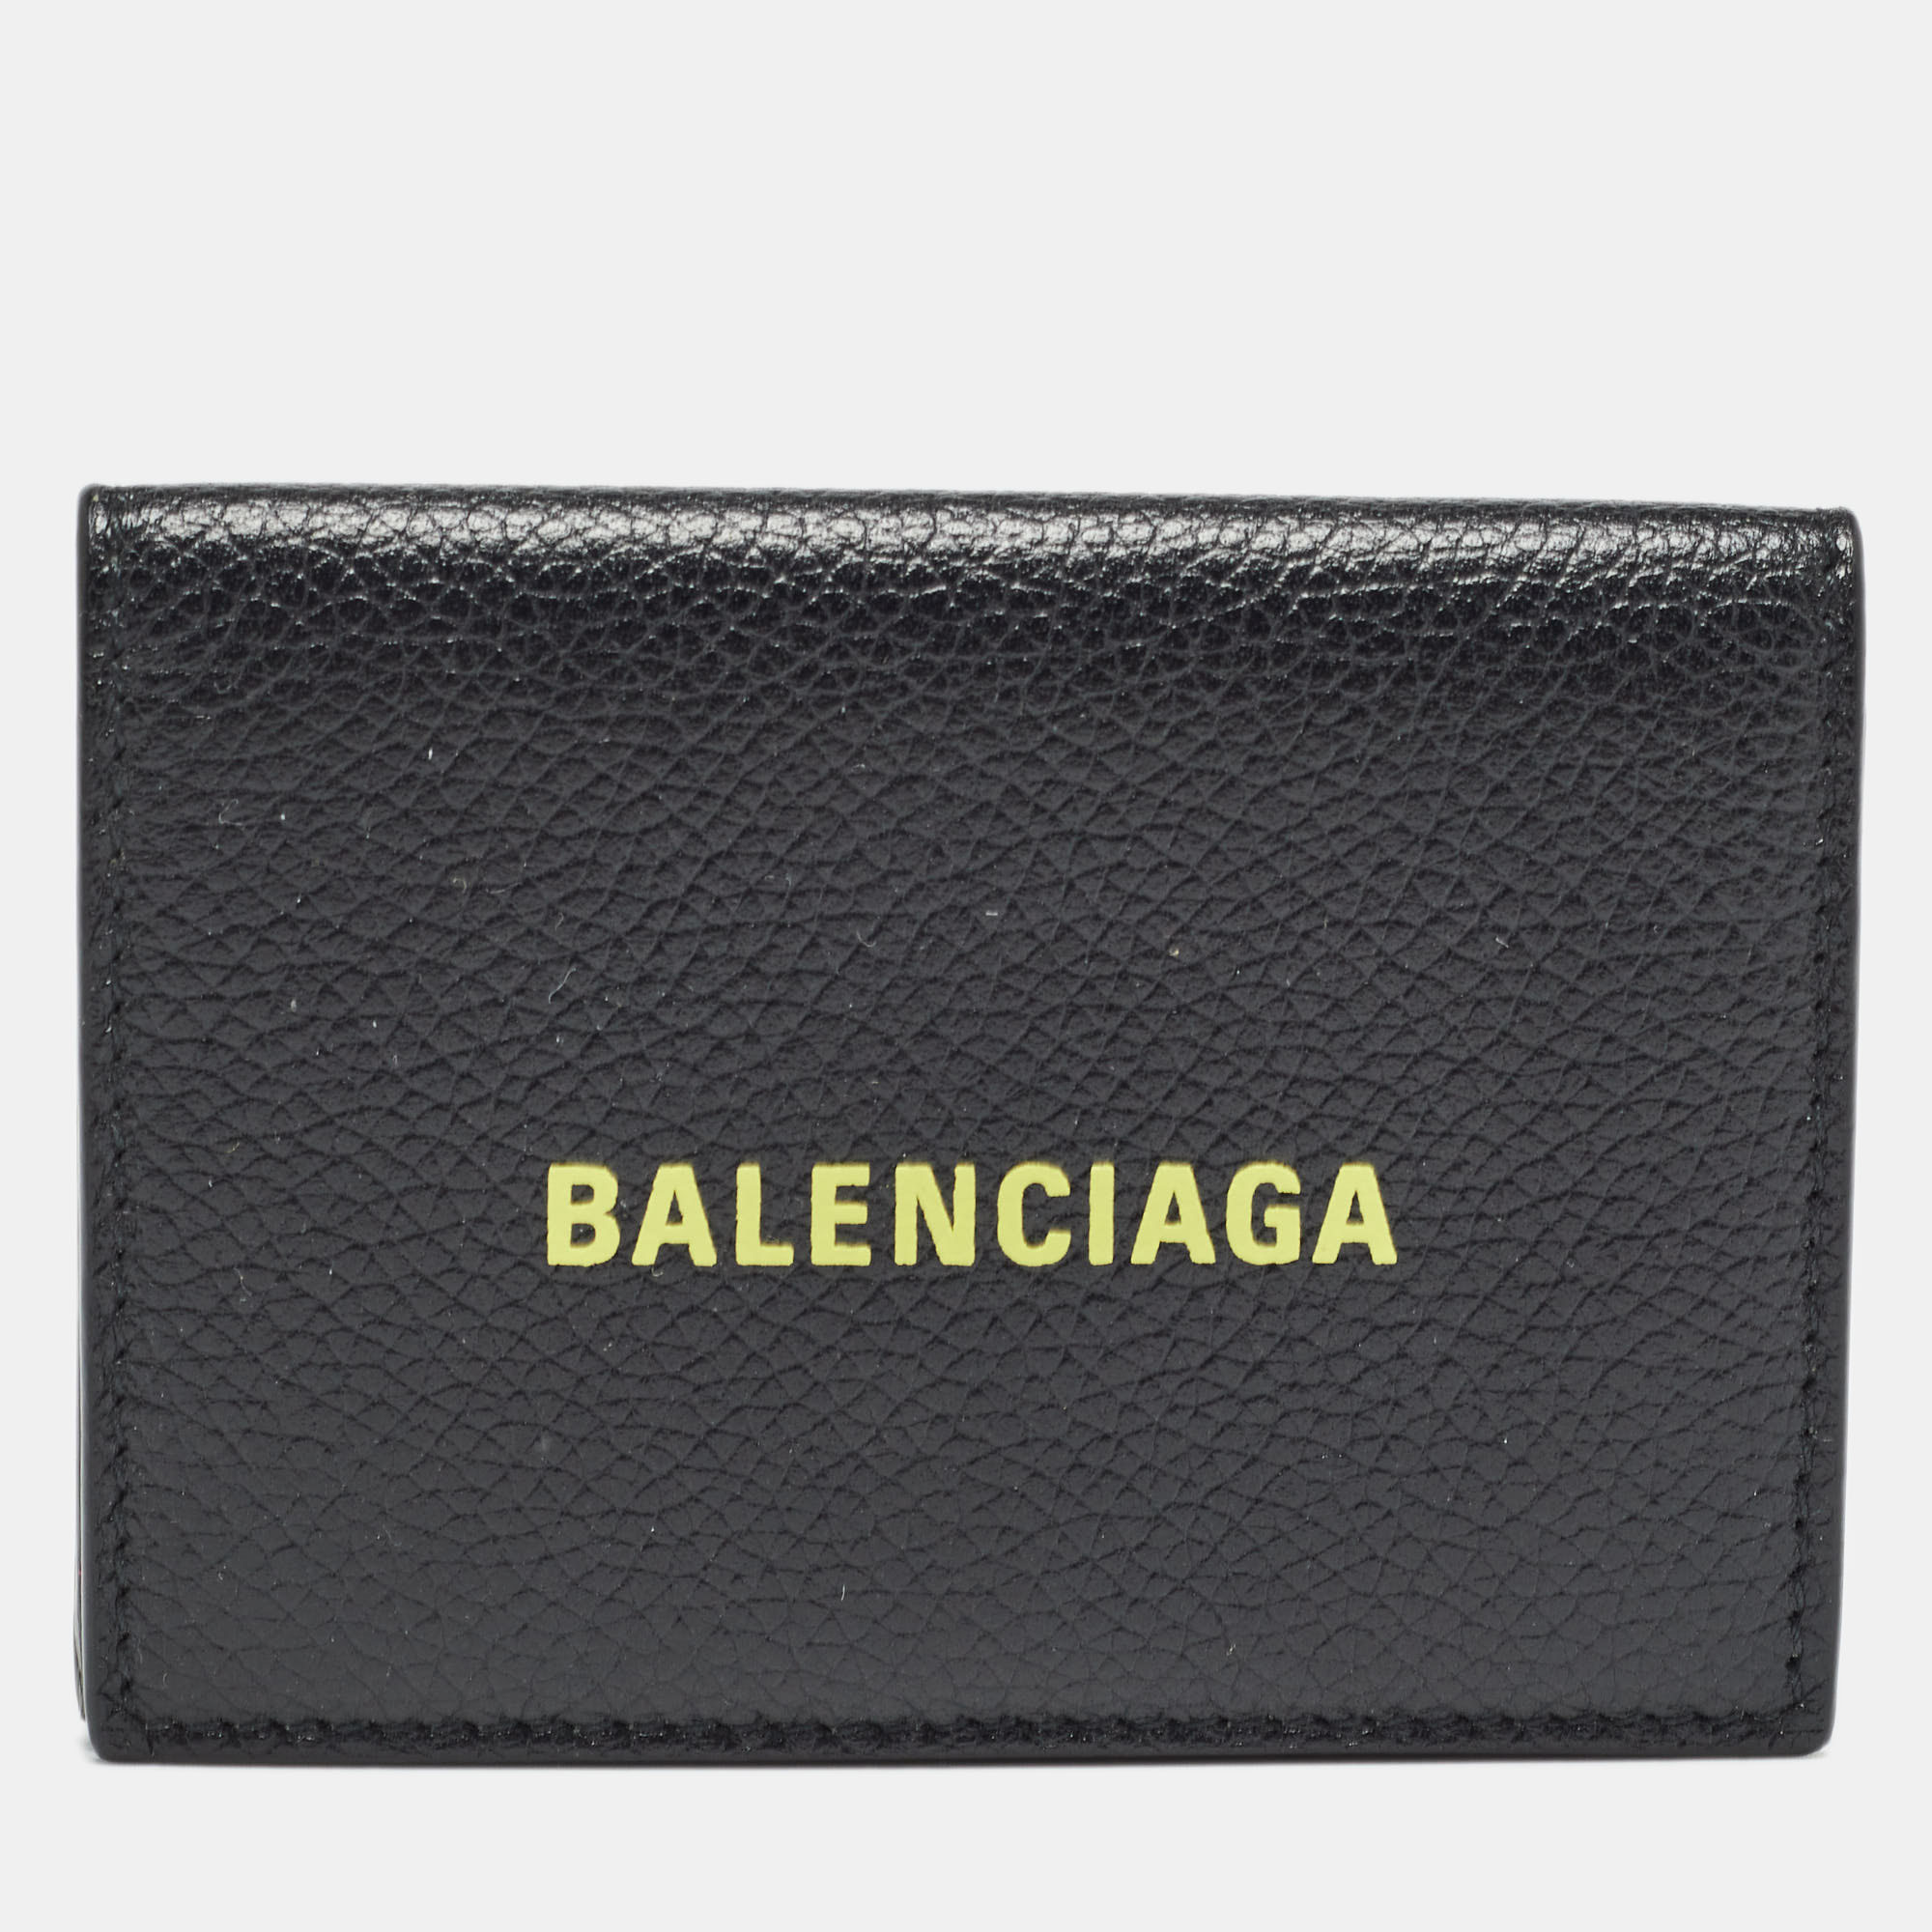 Balenciaga black logo flap card case